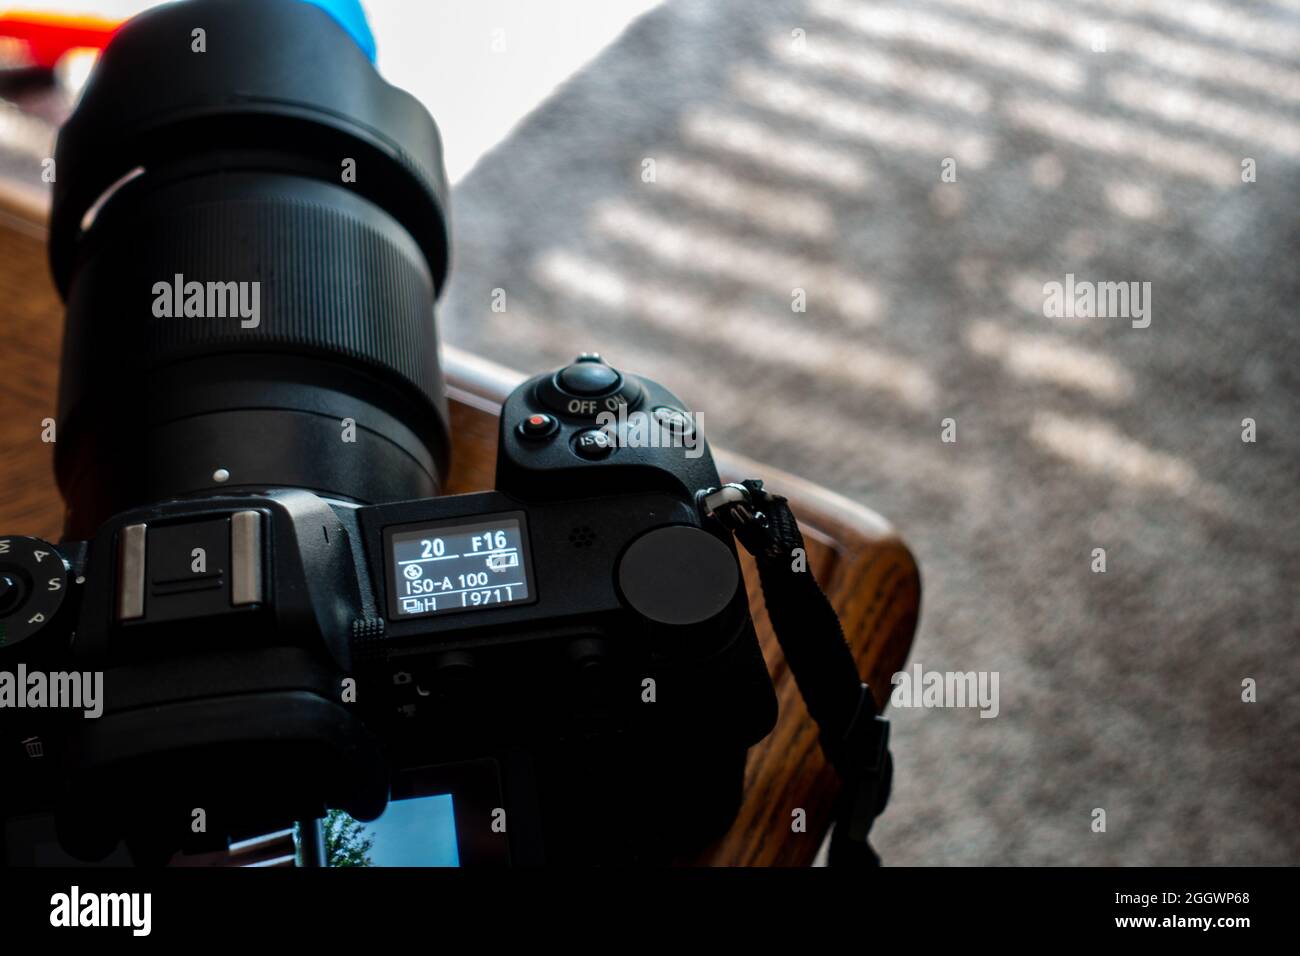 Selektive Fokussierung auf die Anzeige bei niedrigem Akkustand einer High-End-Kamera vor dem Ausschalten Stockfoto